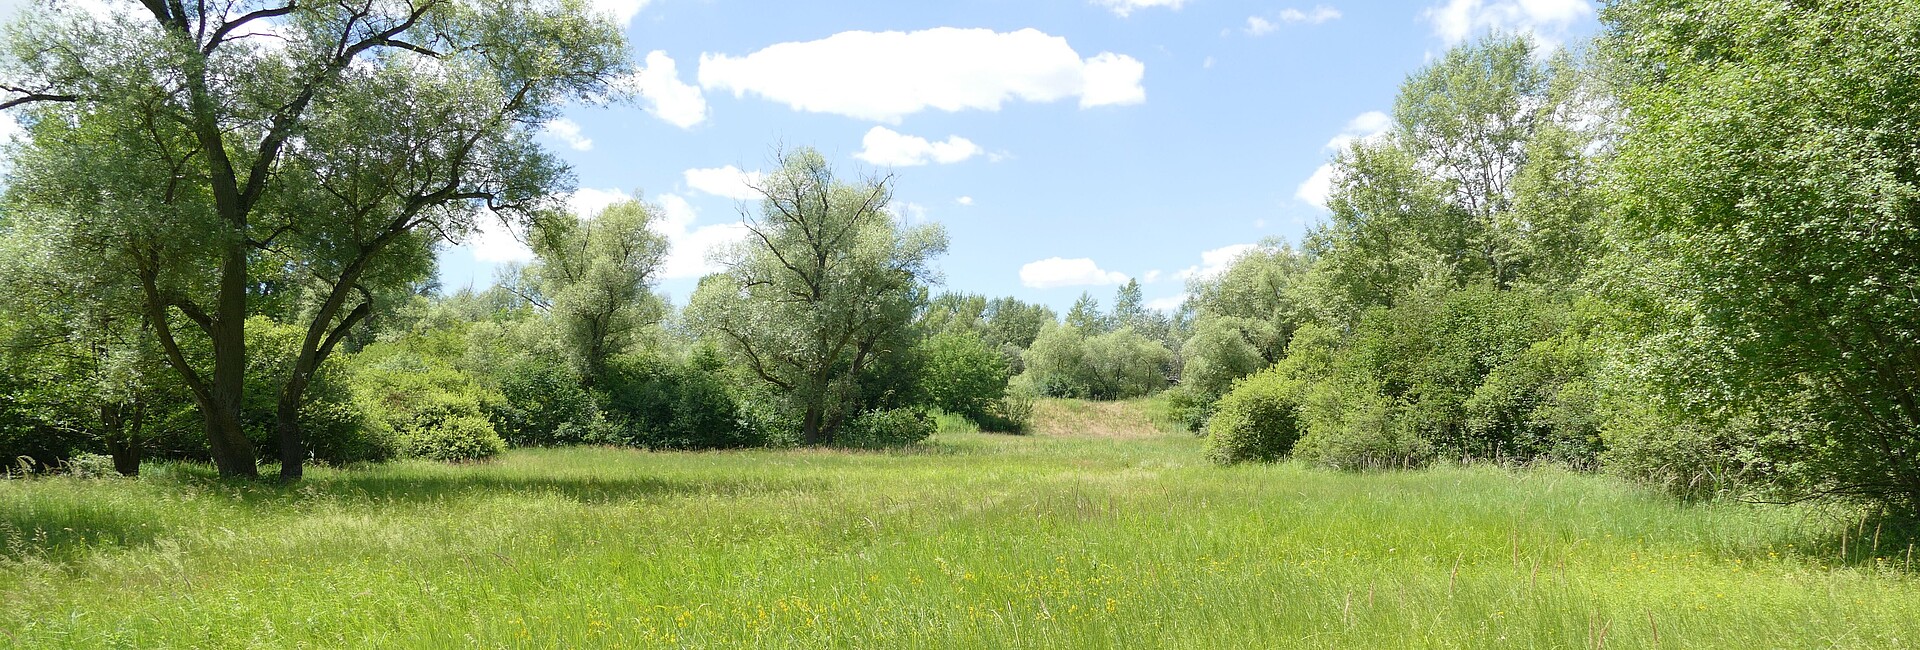 Feuchtwiesen auf Niedermooren im Naturschutzgebiet Schwetzinger Wiese - Riedwiesen